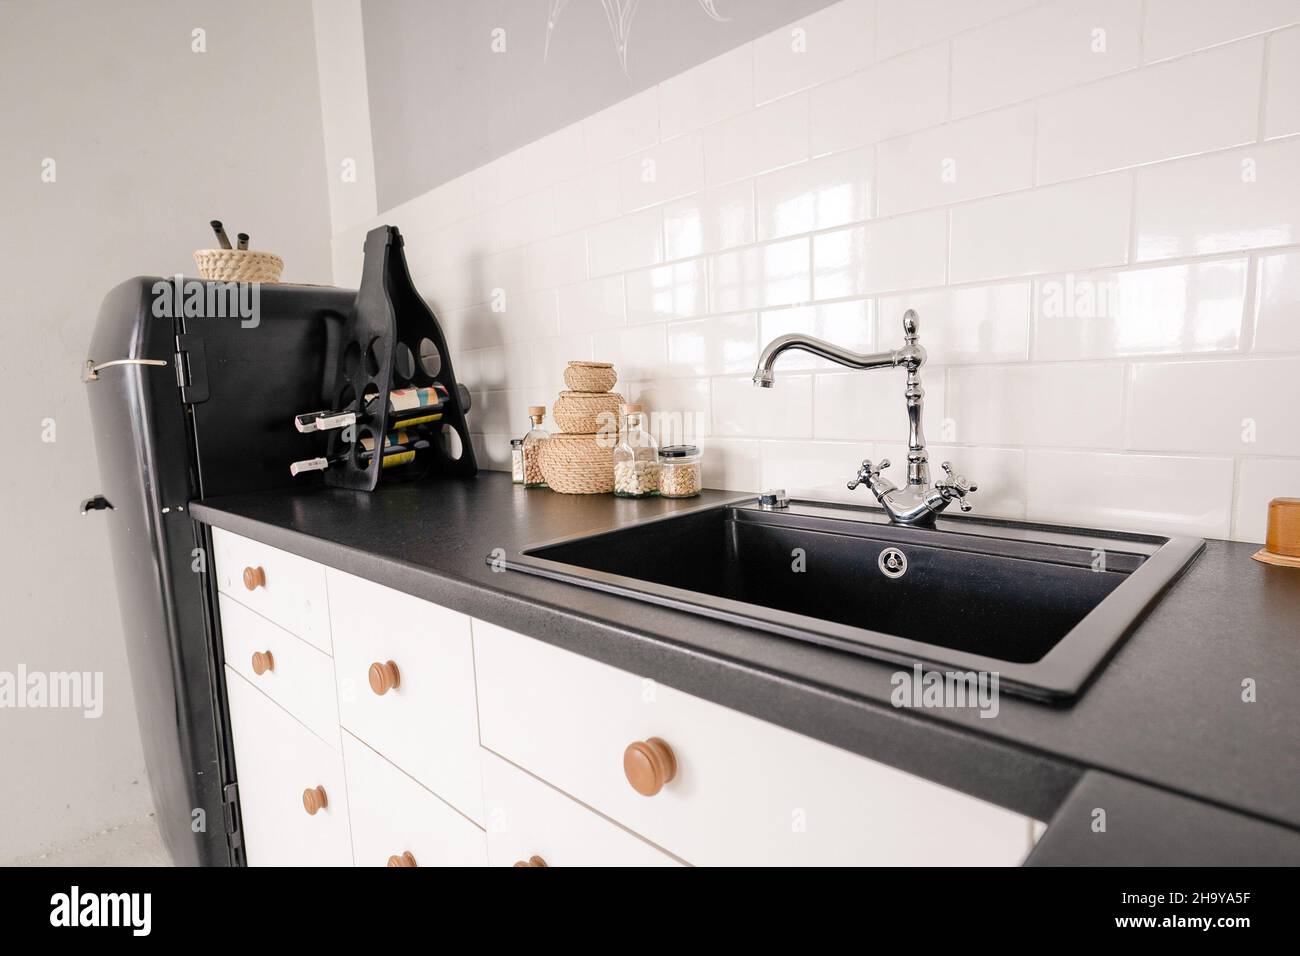 évier noir de style rétro avec robinet pour l'eau dans une cuisine légère, meubles de cuisine, comptoir en marbre noir, armoire de cuisine, carreaux blancs sur le mur.Photo de haute qualité Banque D'Images